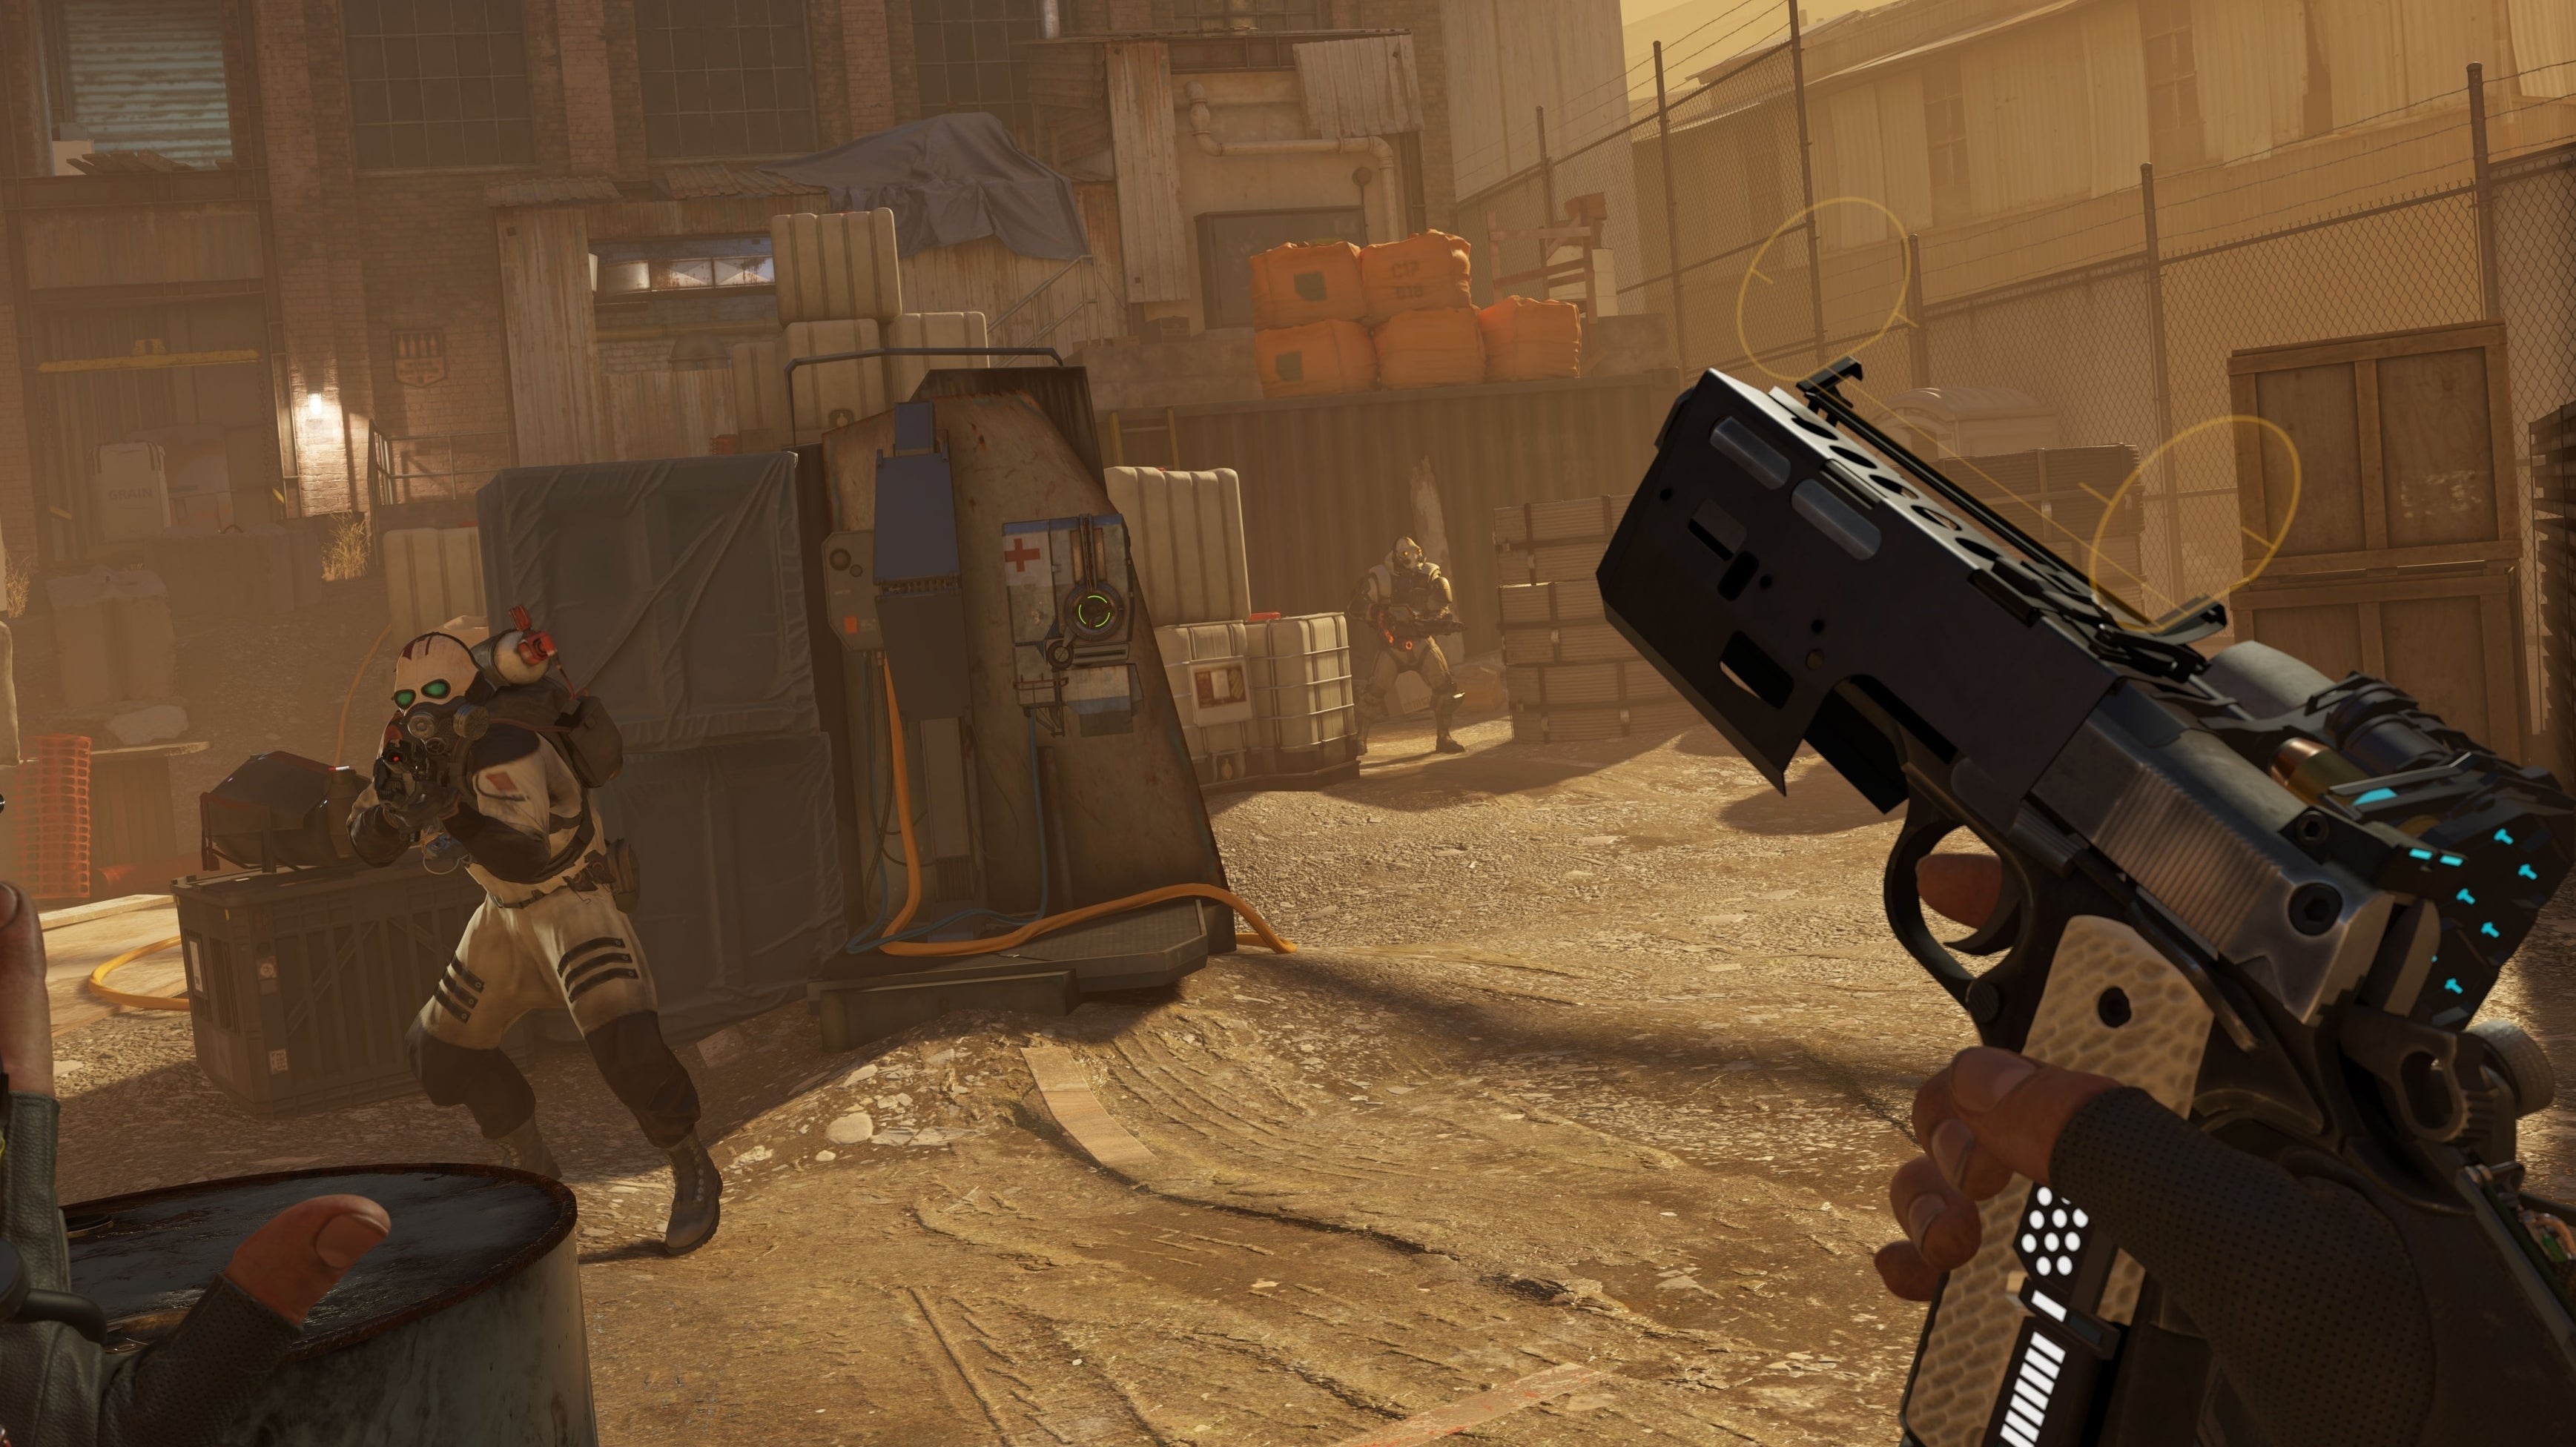 Image for Tři oficiální videa Half-Life: Alyx ukazují novou úroveň interaktivity ve hrách